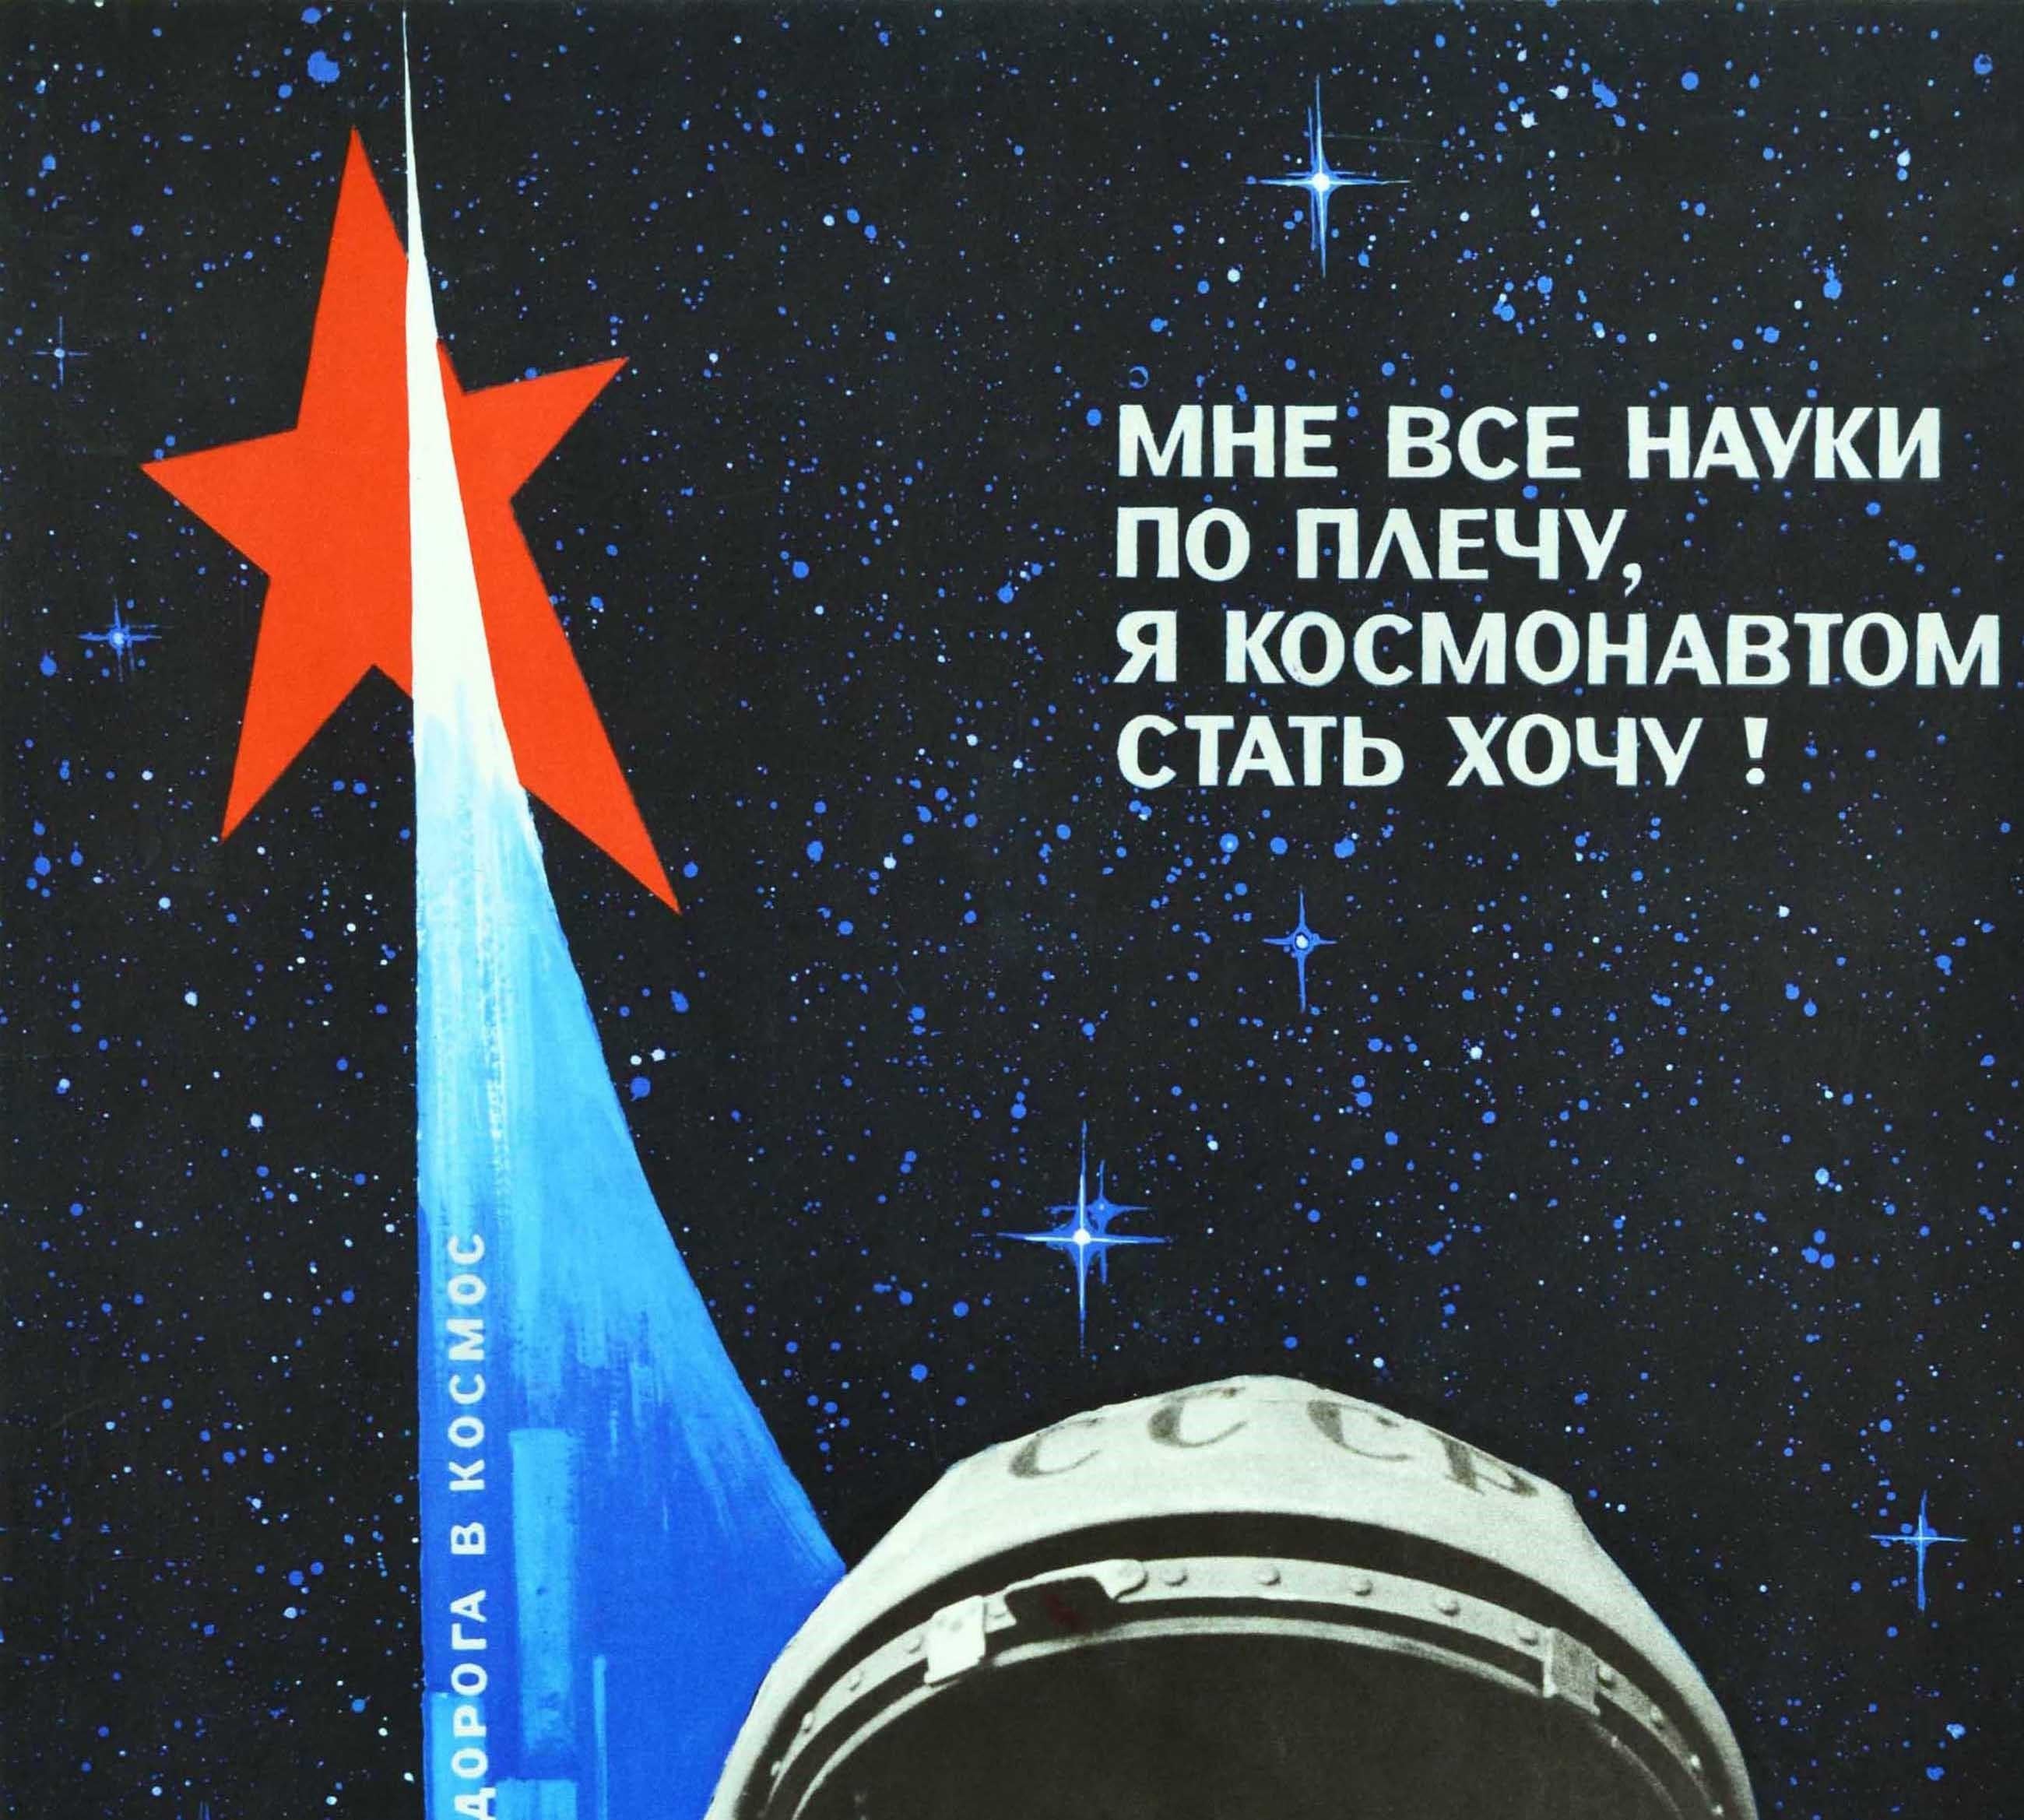 Original-Vintage-Raumteiler-Poster, Sowjetische Schule, Junge Cosmonaut, Wissenschaftsbildung, UdSSR – Print von Galkin